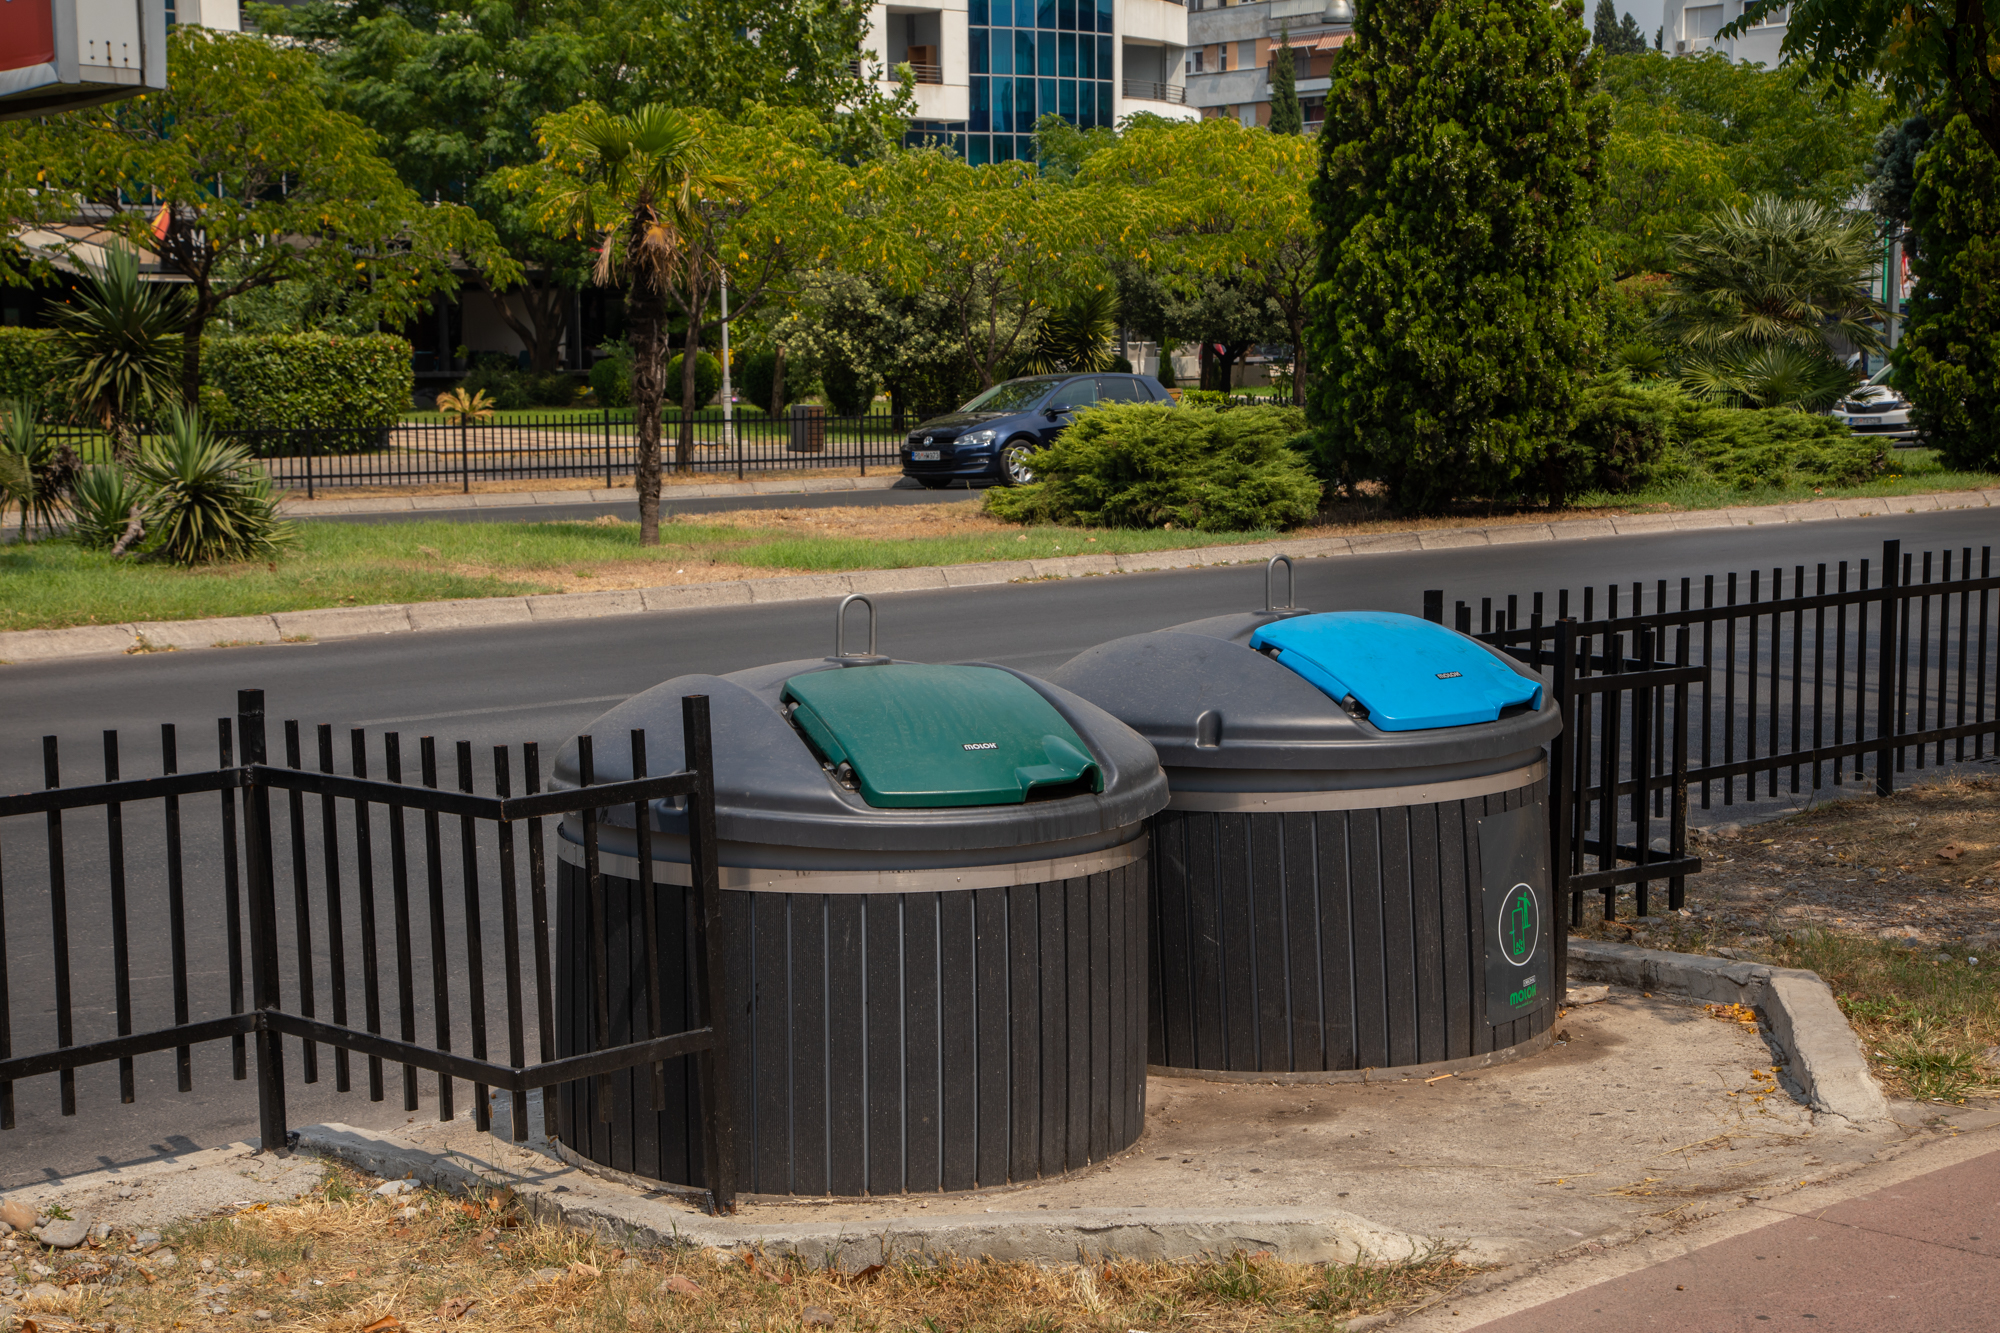 Apel građanima da propisno odlažu otpad; Odgovornim odnosom do zdrave i čiste Podgorice